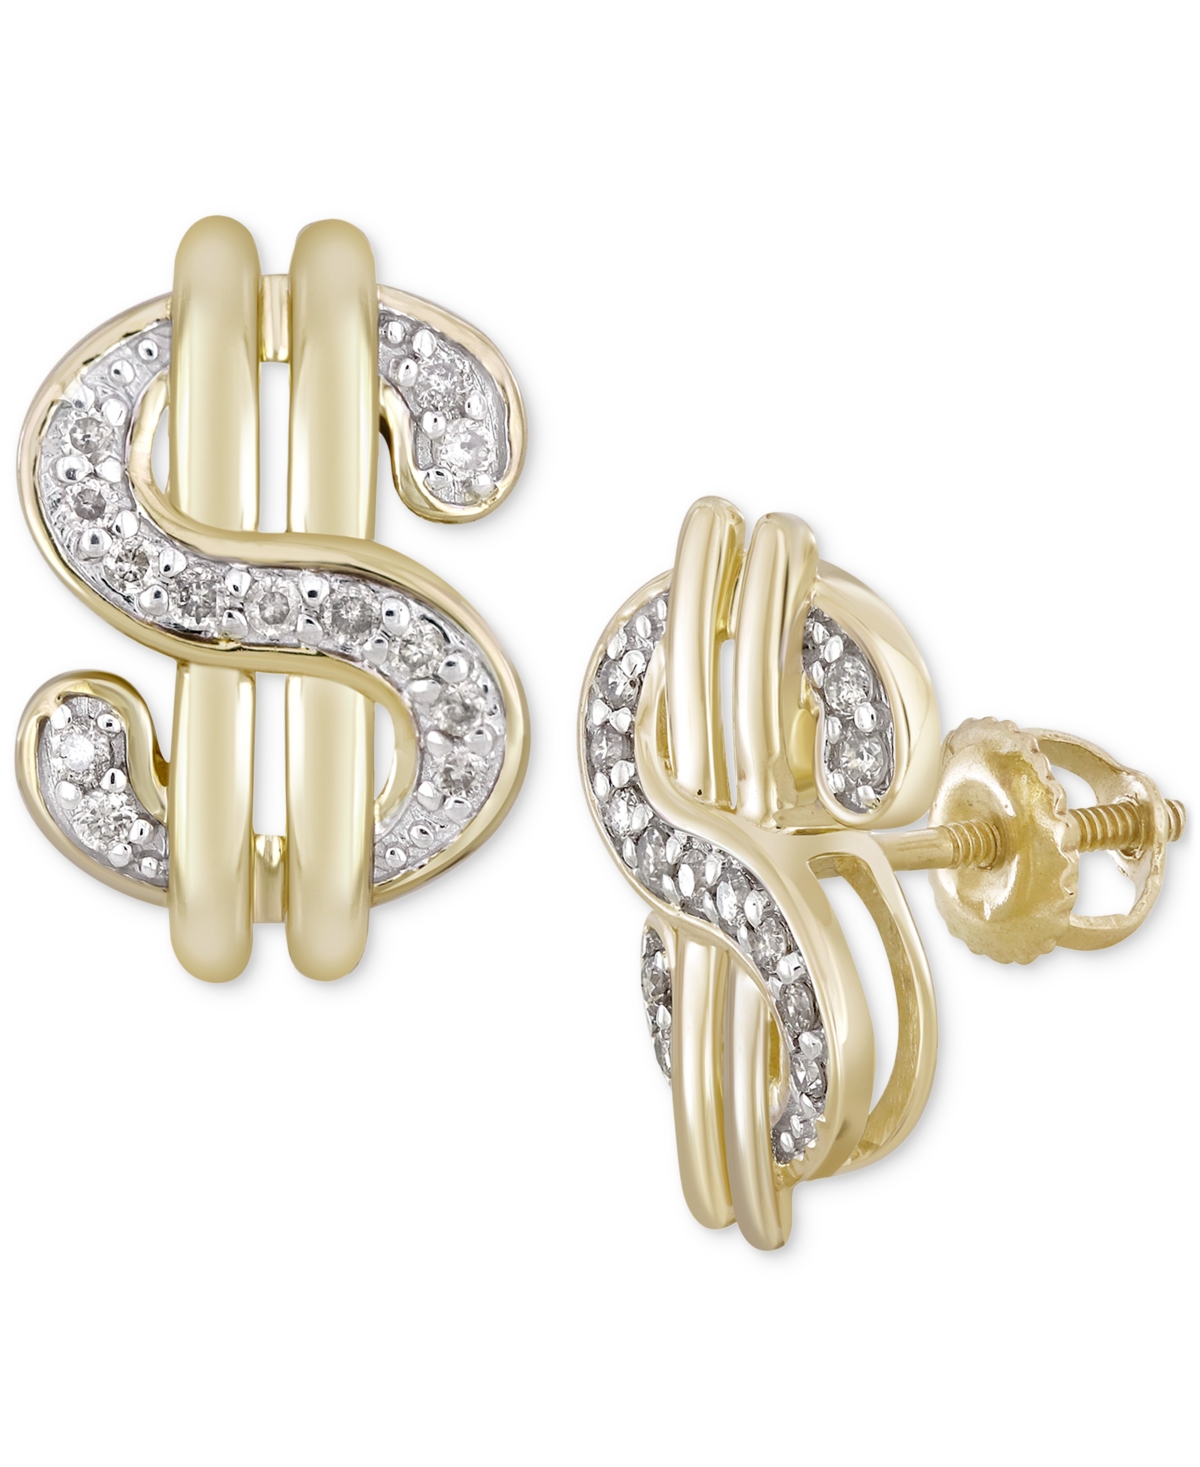 Men's Diamond Dollar Sign Stud Earrings (1/5 ct. t.w.) in 10k Gold - Gold